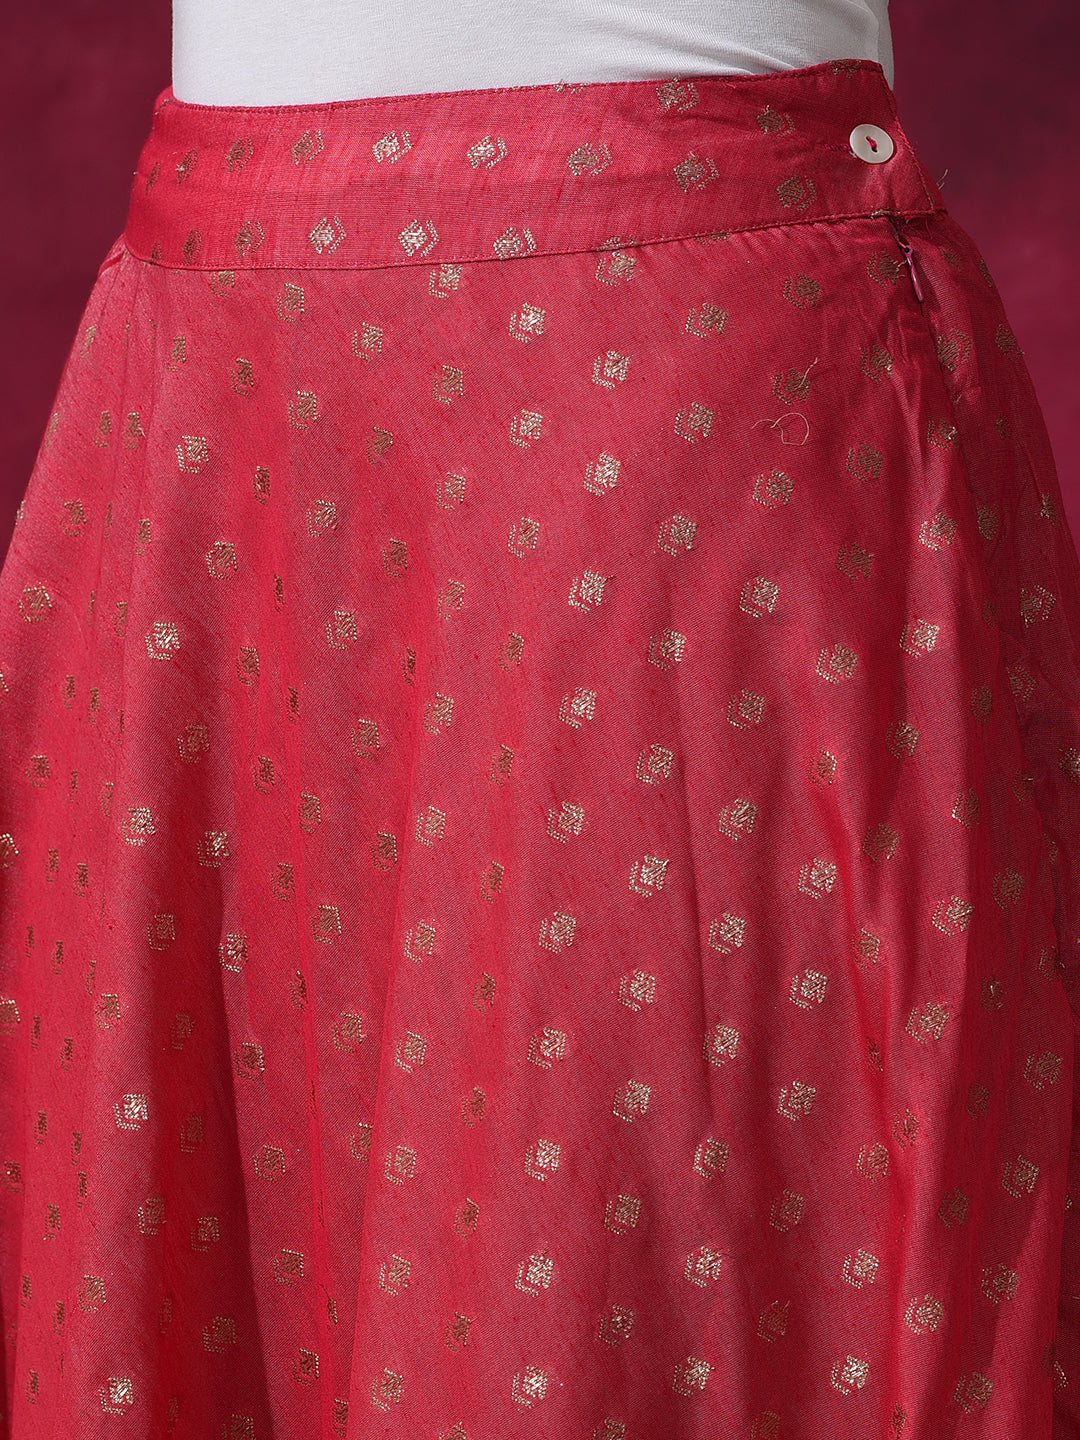 Pink Dobby Designed Lehenga Choli With Dupatta